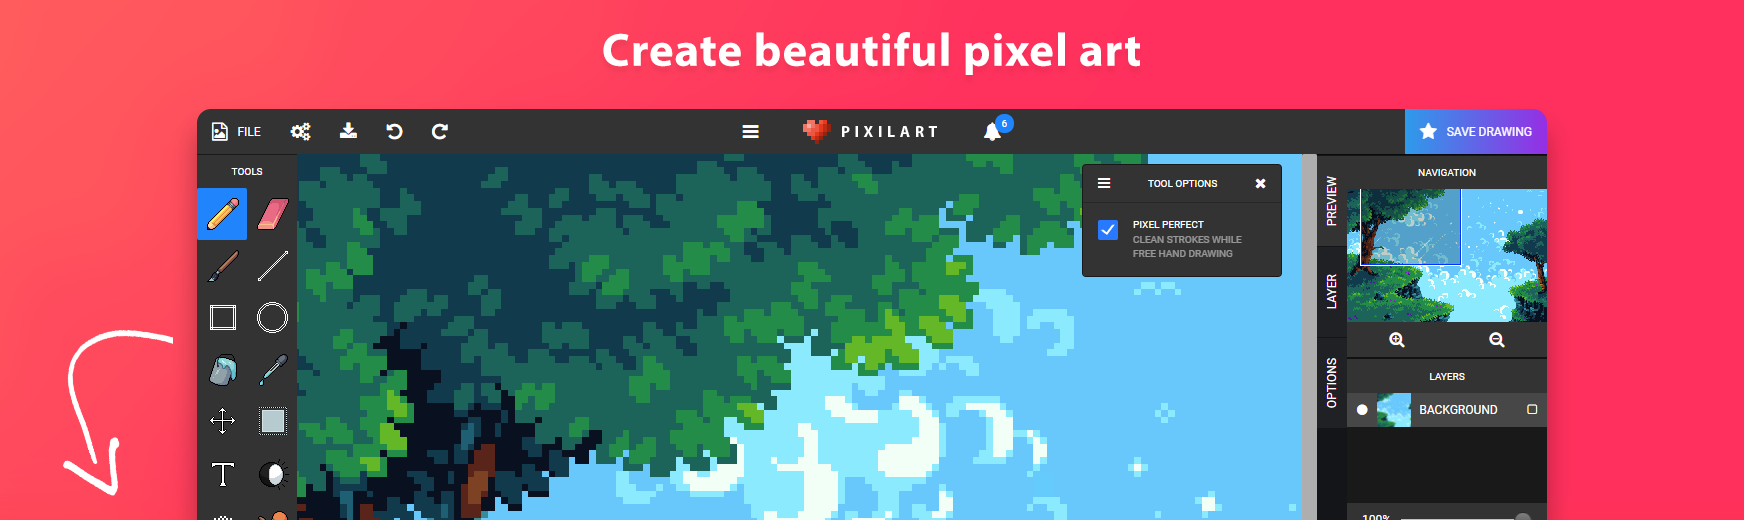 Make Pixel Art Online - Pixilart.com